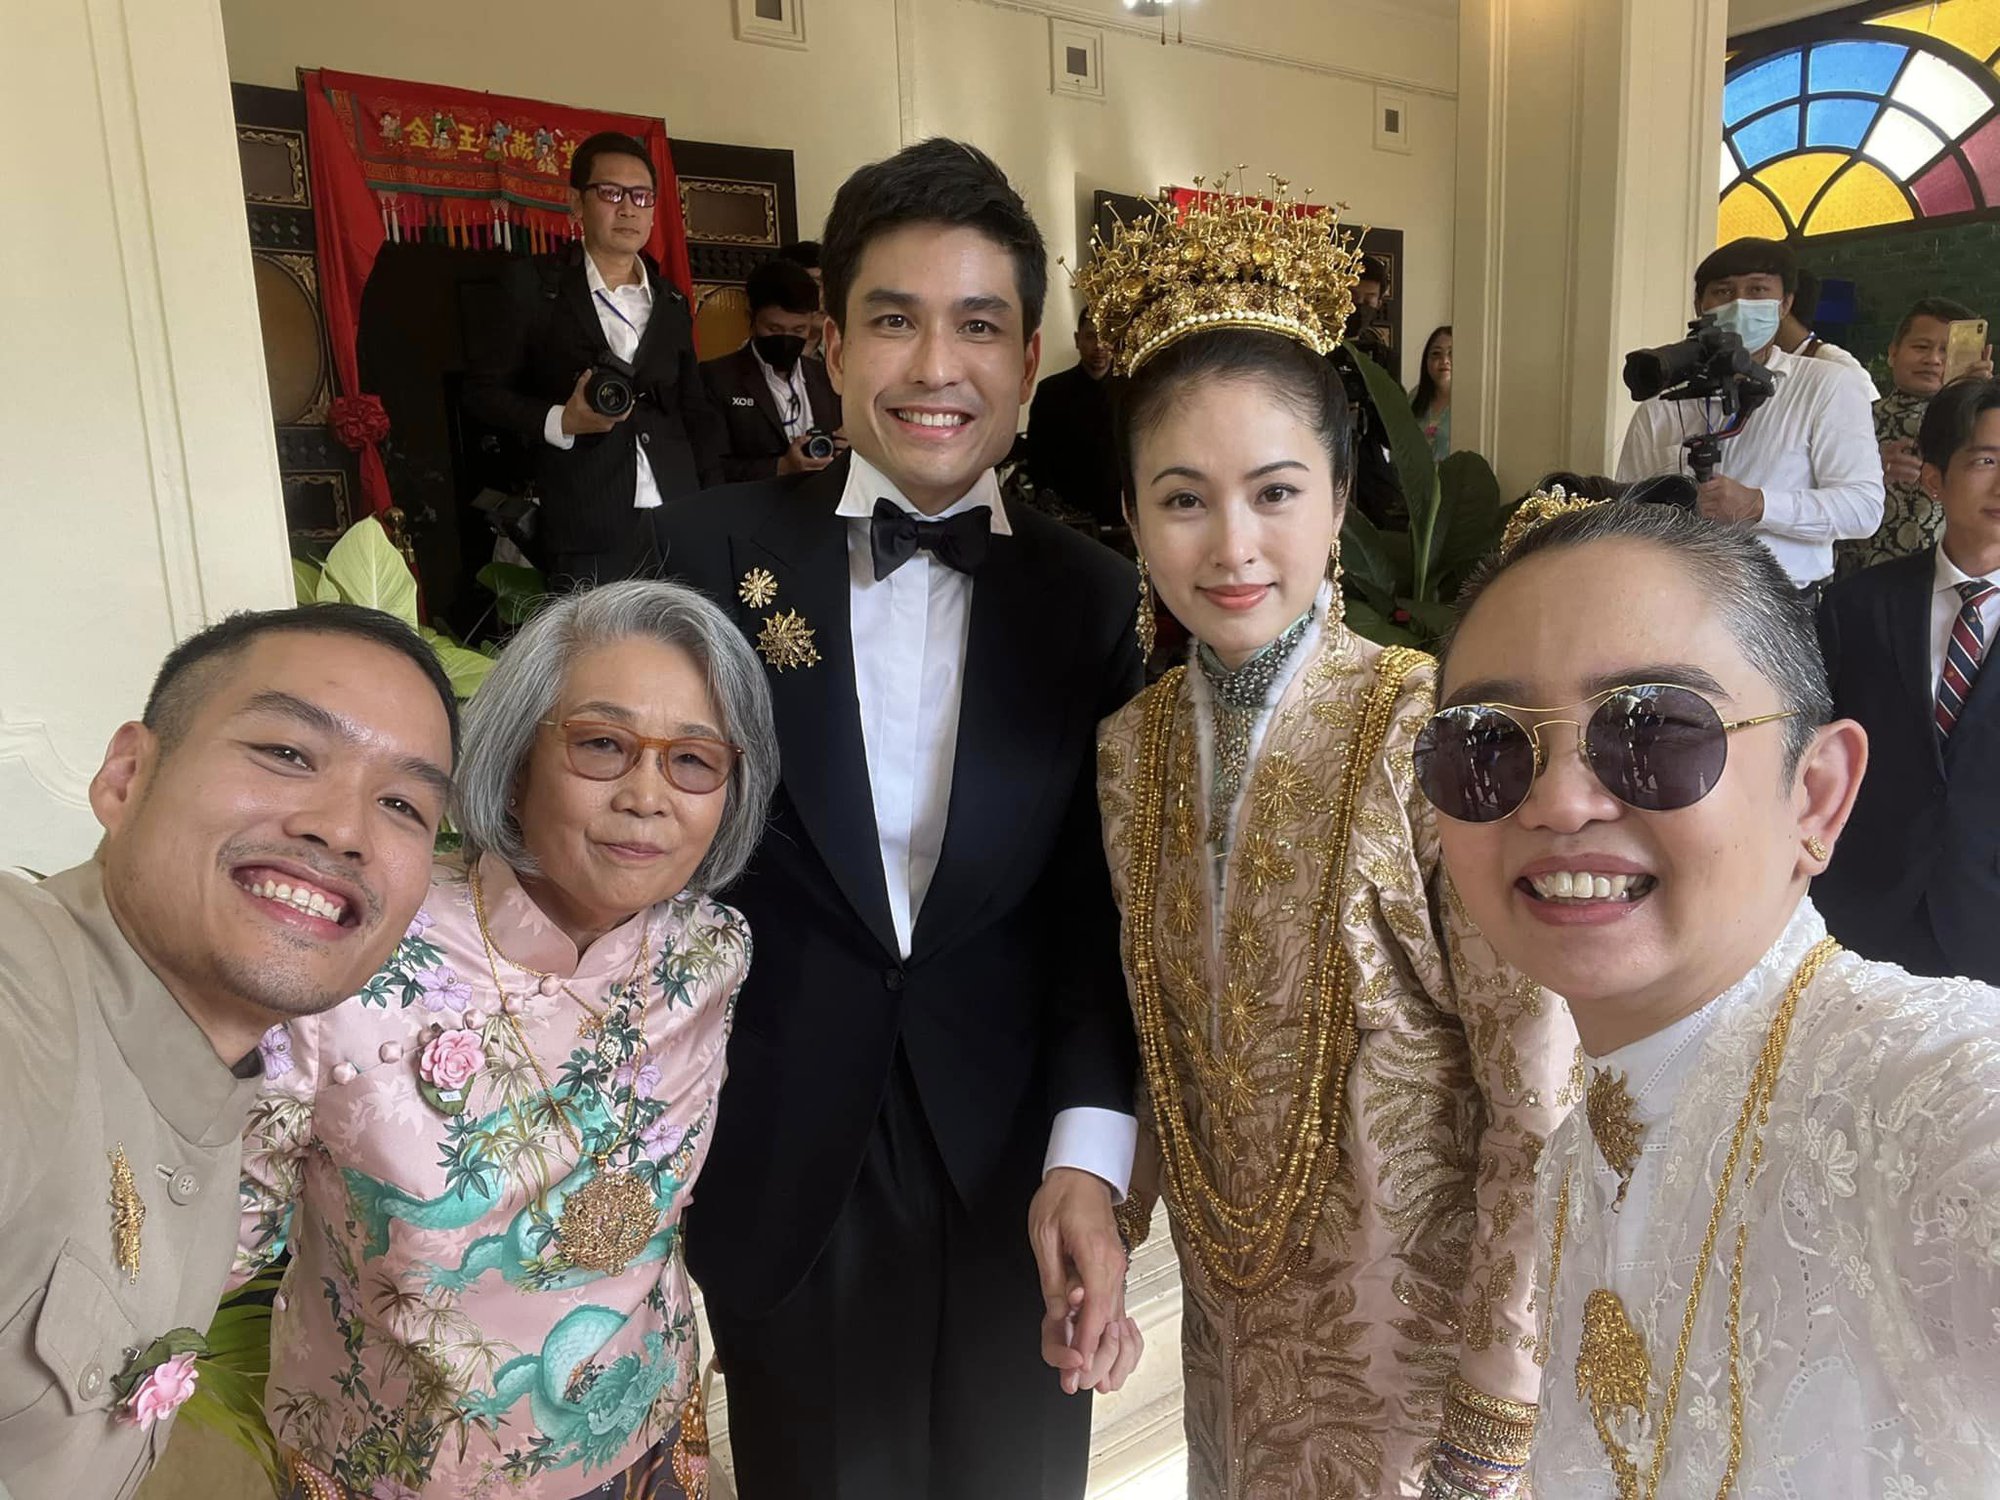 Hình ảnh đầu tiên trong hôn lễ của mỹ nhân chuyển giới Nong Poy: Cô dâu đội vương miện vàng cùng chú rể điển trai chính thức xuất hiện - Ảnh 8.